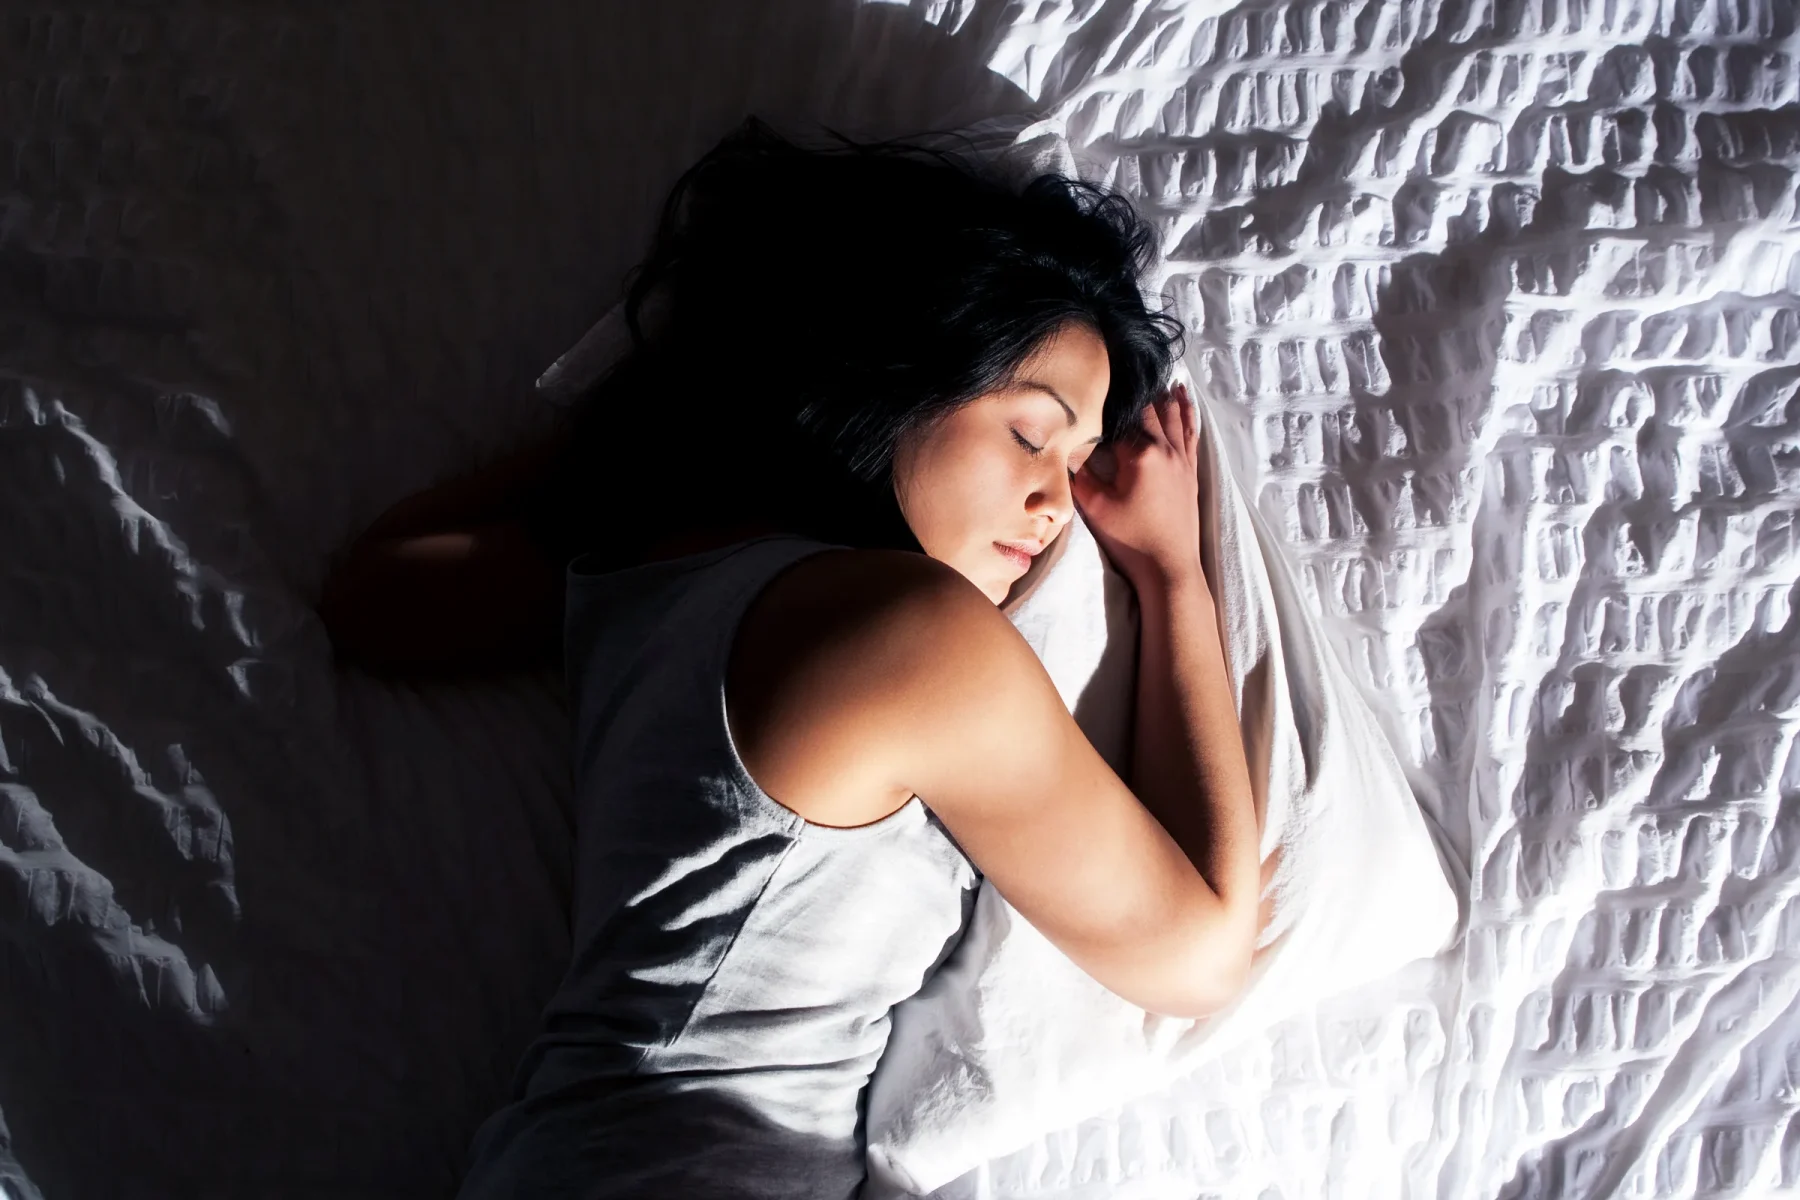 Ύπνος πανδημία: Η εργασιακή ευελιξία παρουσιάζει οφέλη στην ποιότητα ύπνου πολλών εργαζομένων